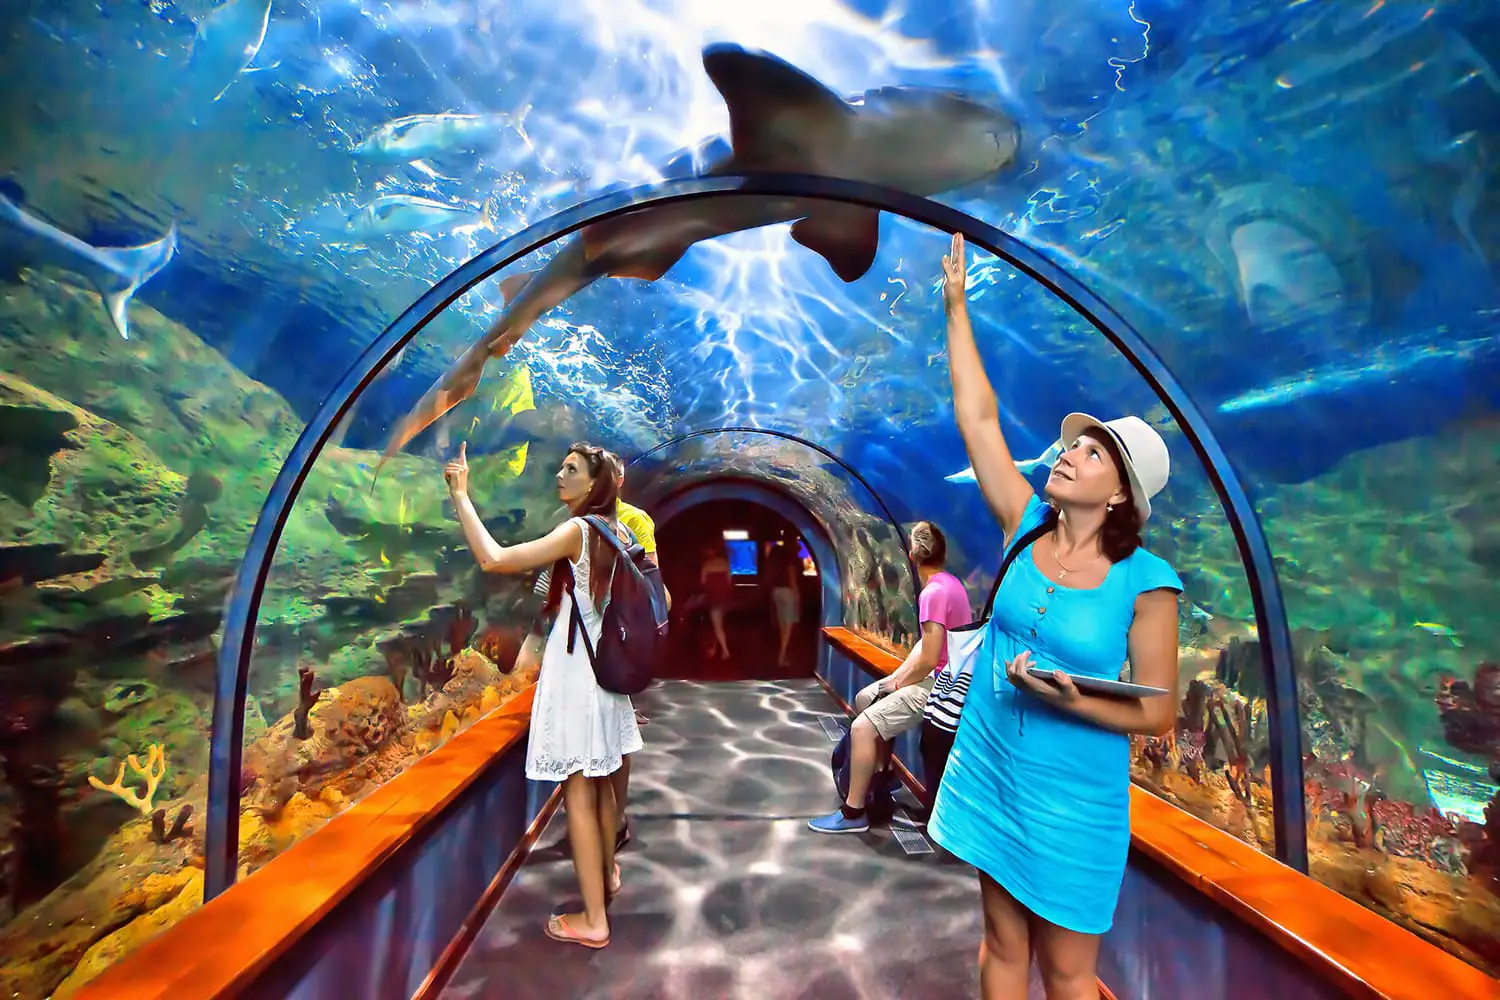 Aquatic tunnel in the Loro parque aquarium in Tenerife, Canary Islands